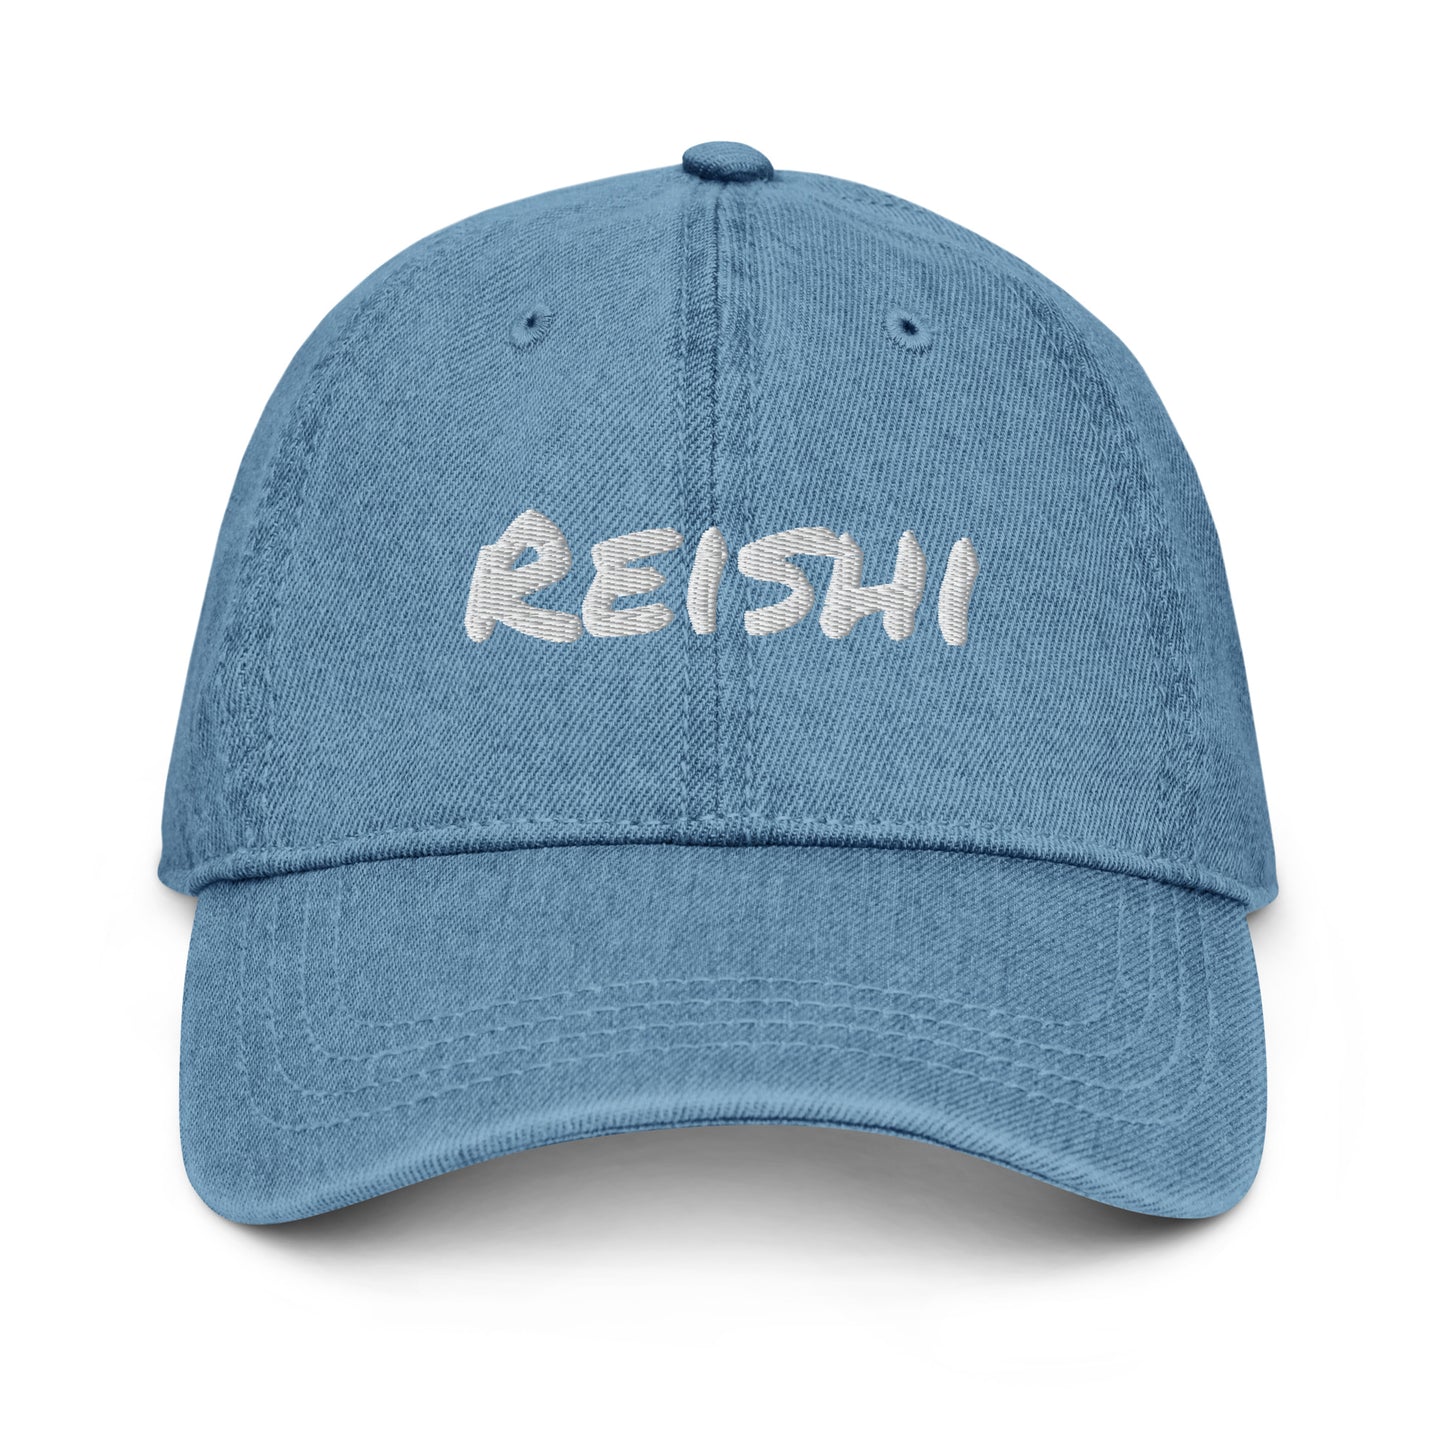 The Reishi Denim Cap